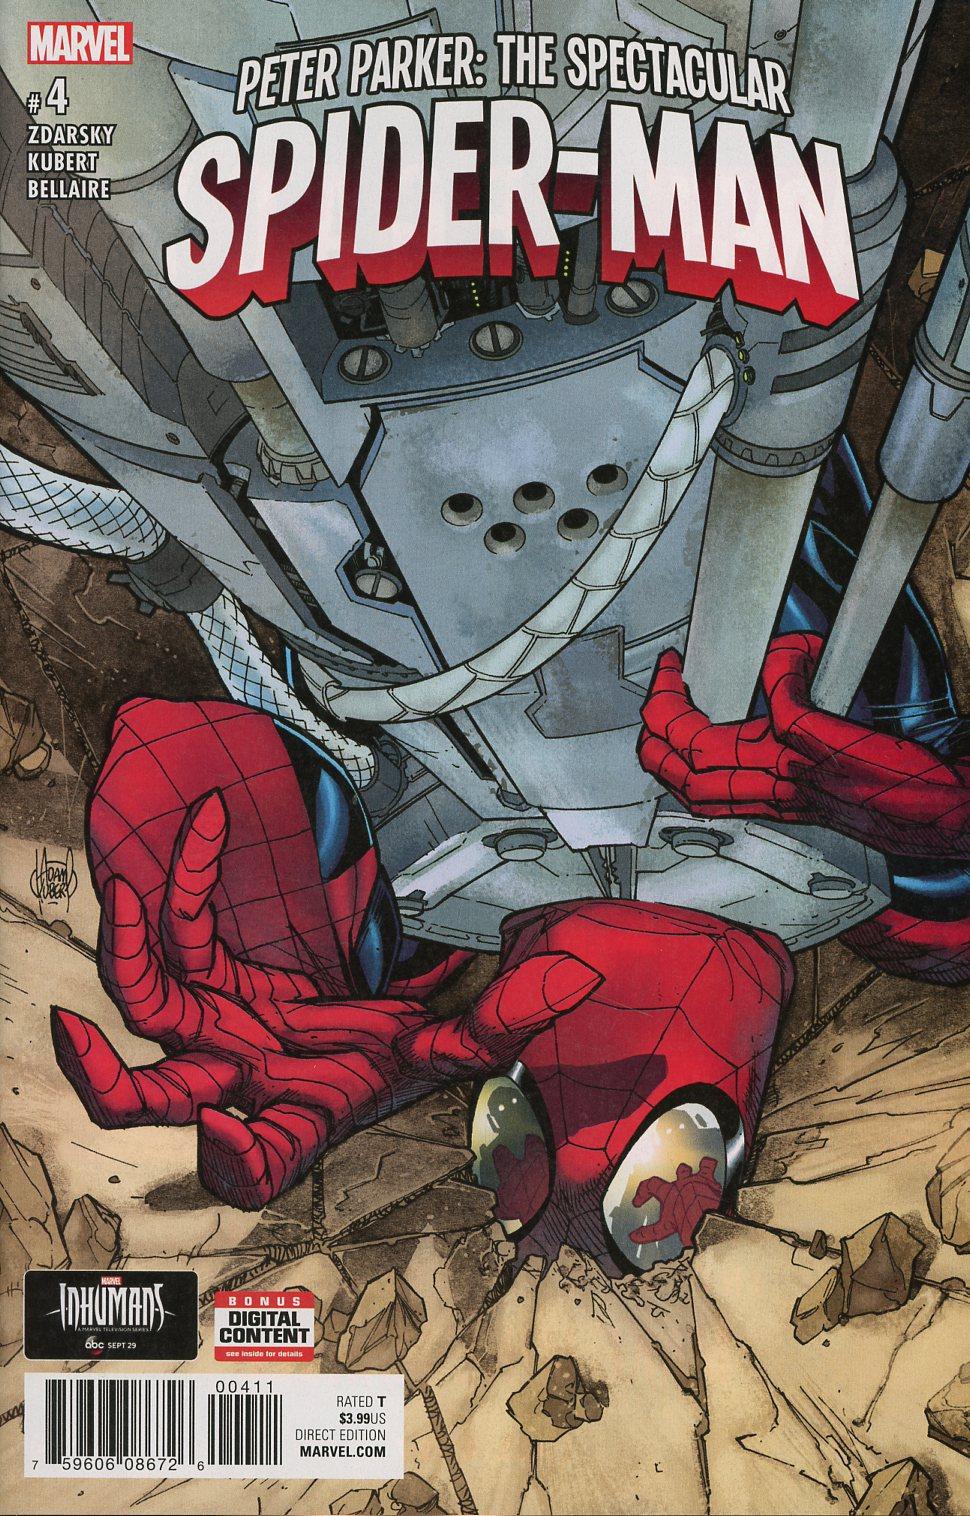 Peter Parker Spectacular Spider-Man Vol. 1 #4